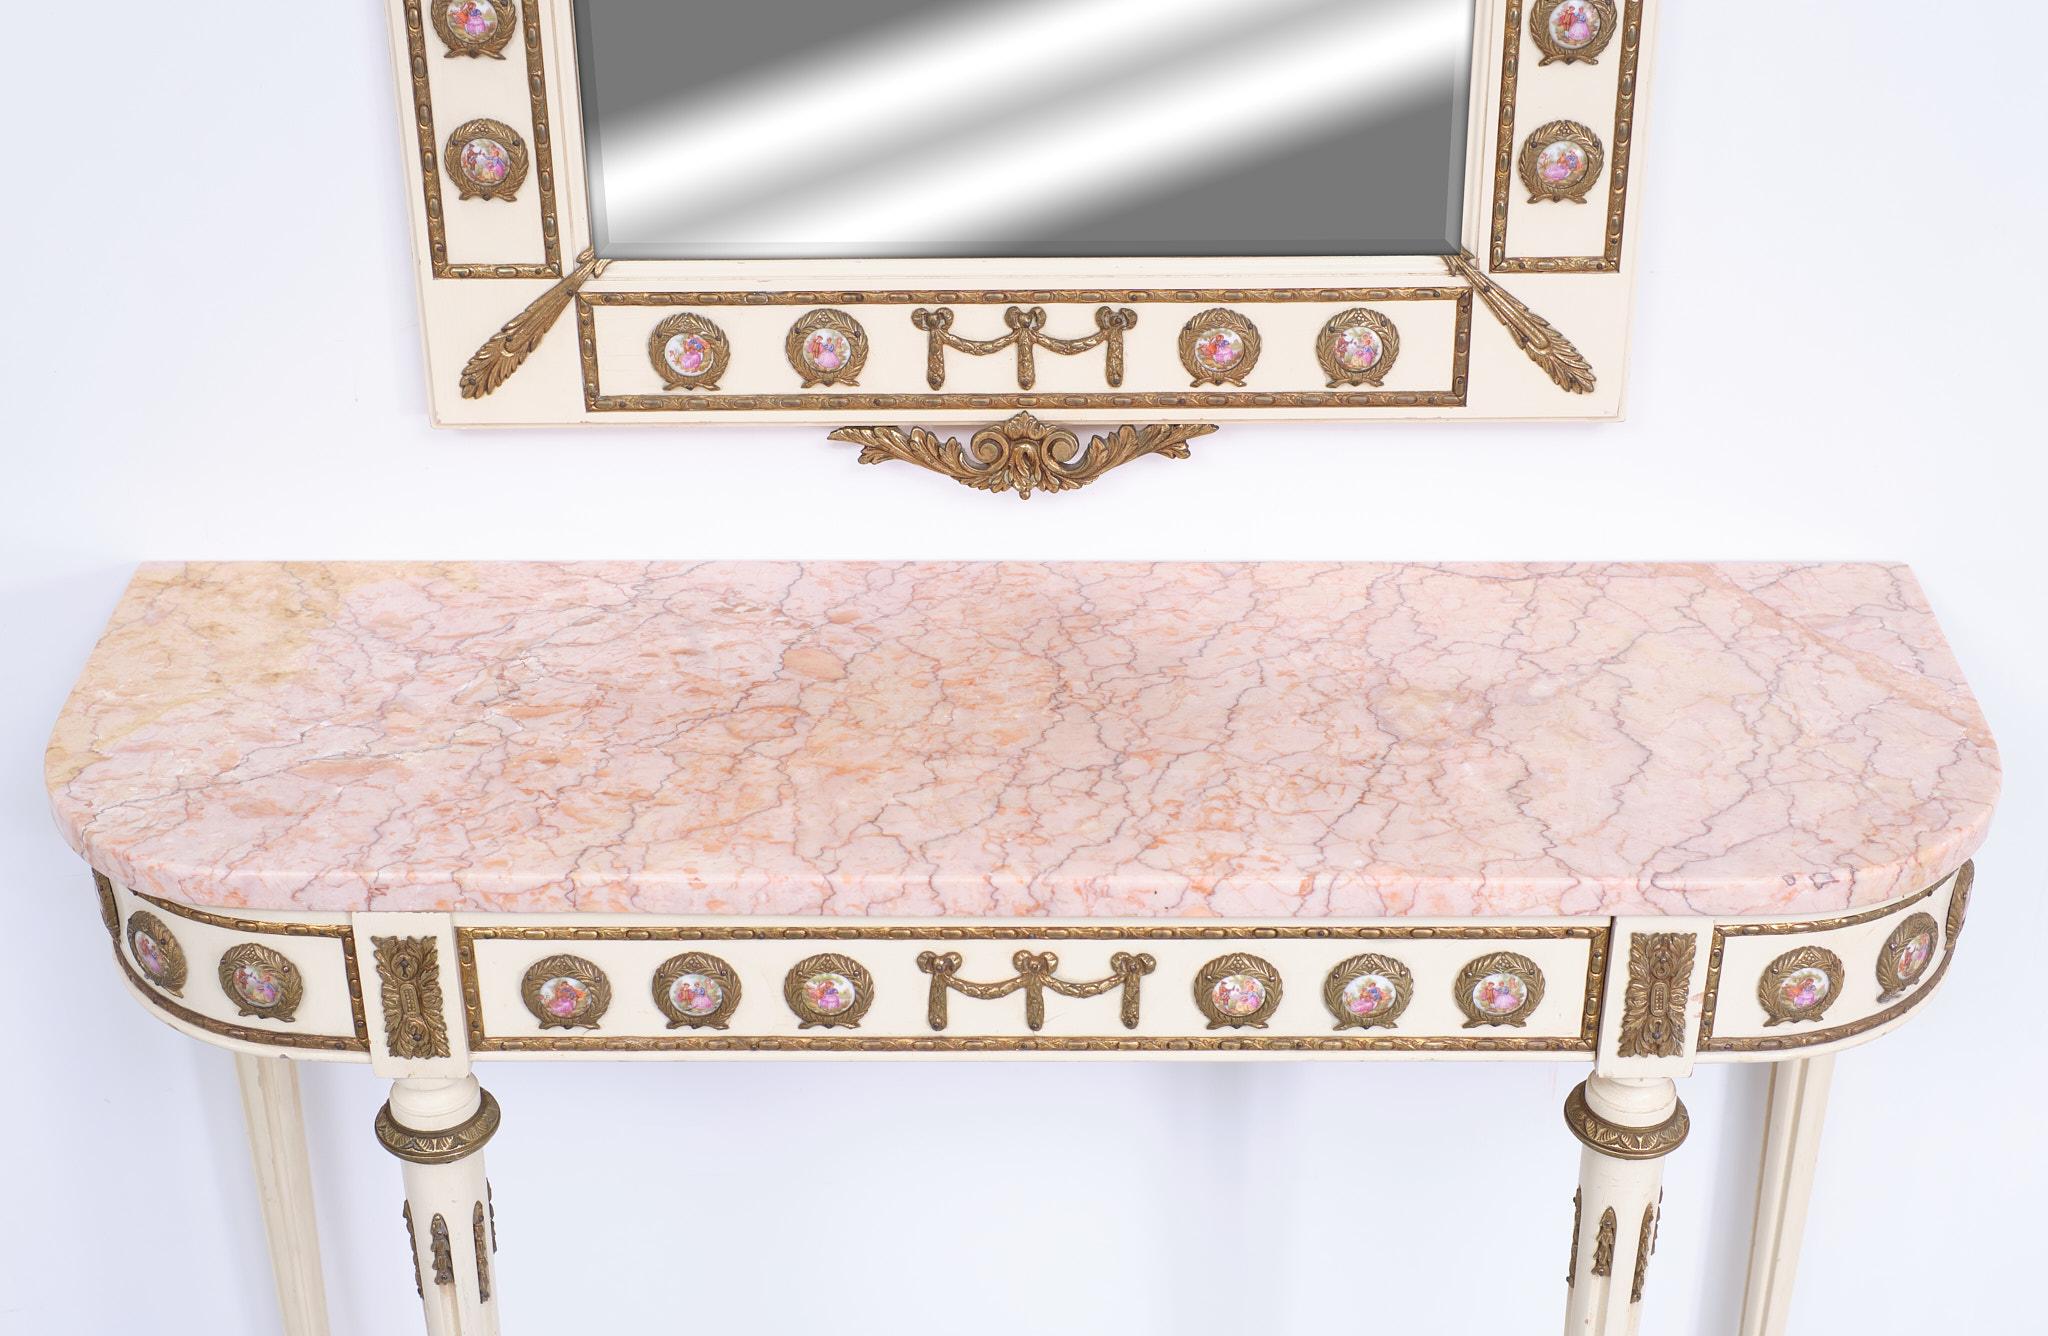 Dies ist eine schöne elegante Französisch Louis XVI Revival Konsole Tisch und passenden Spiegel aus der Mitte des 20. Jahrhunderts. Hergestellt von Mariner SA Spanien Spitzenqualität. 
Dieses prächtige Stück ist aus Holz mit atemberaubenden Ormolu